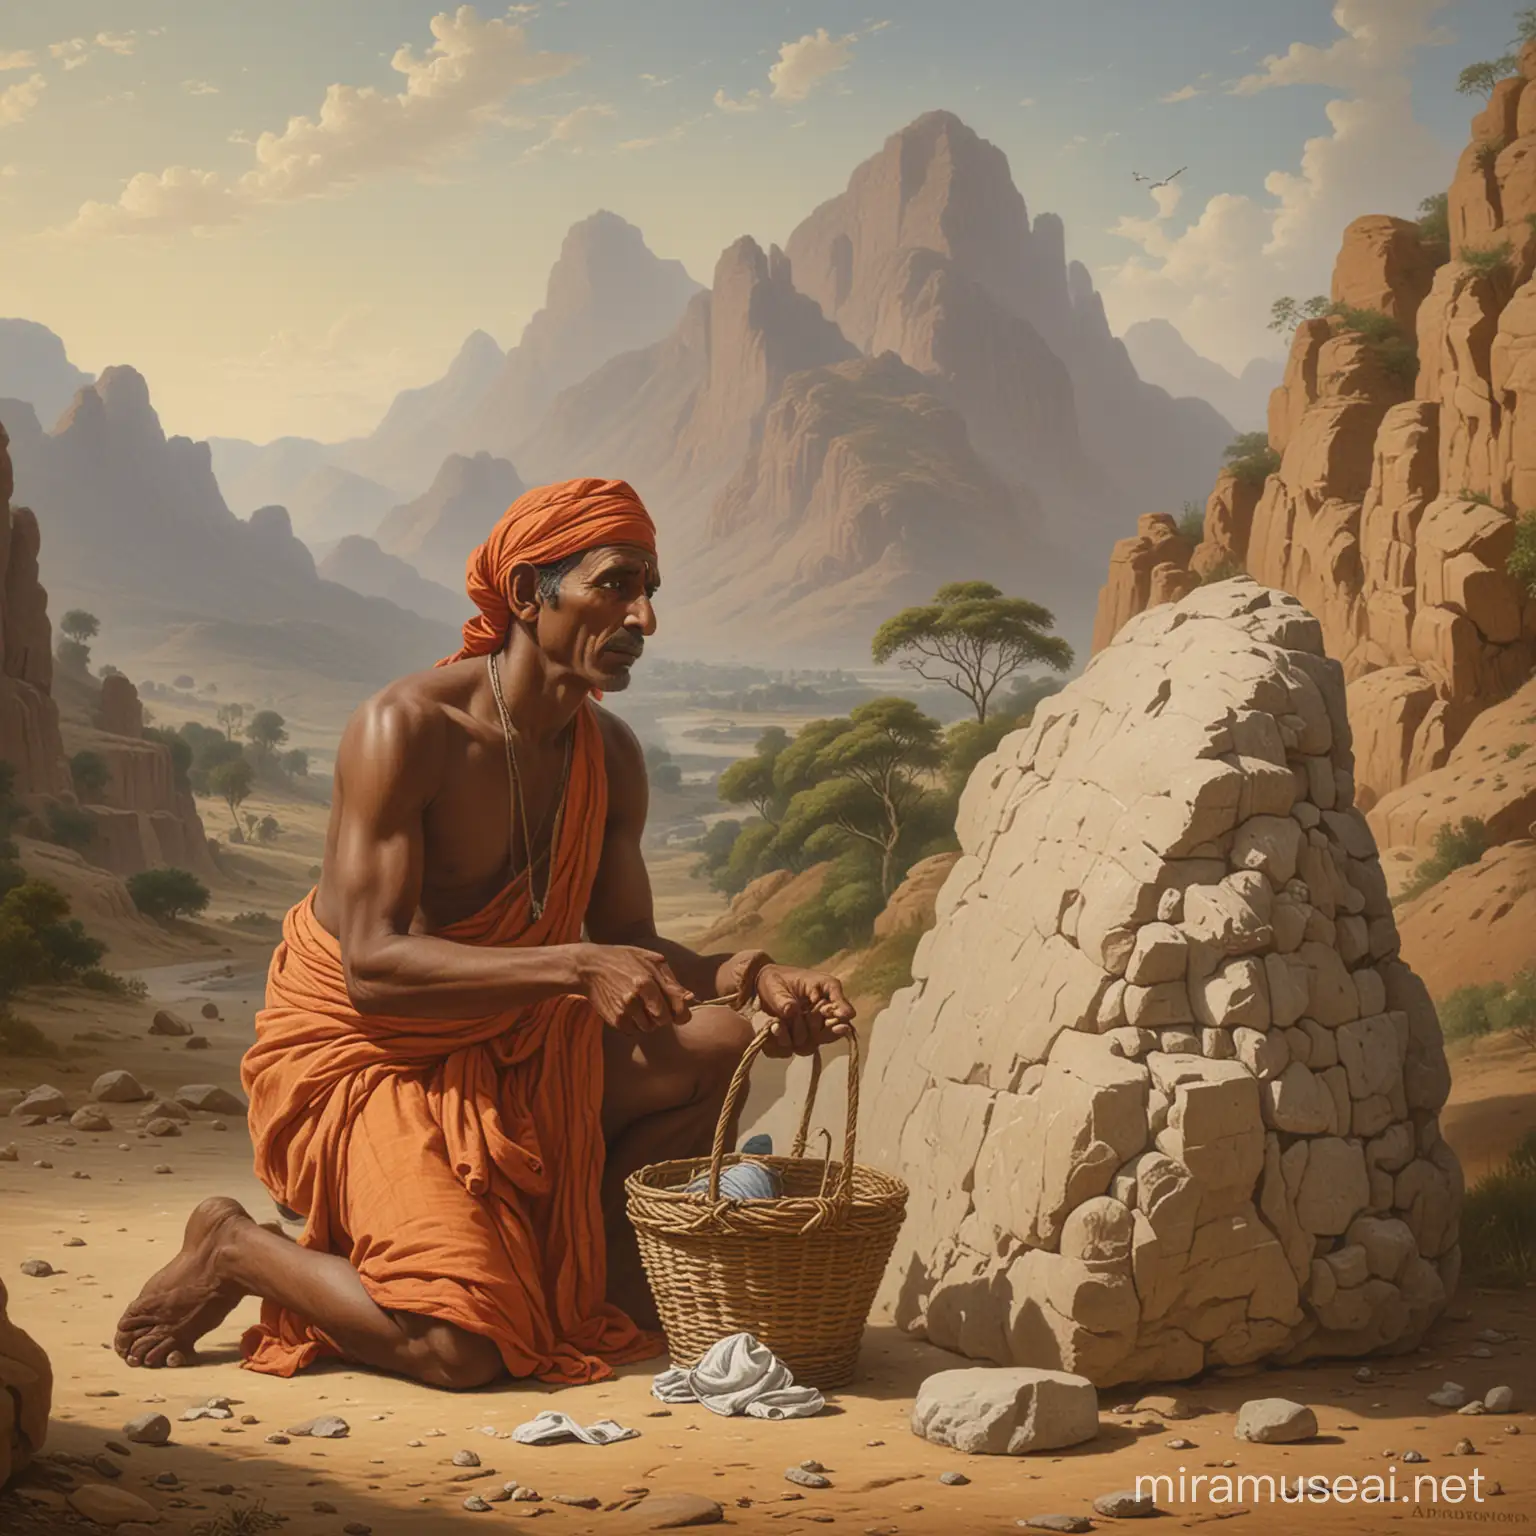 Blind Indian Washerwoman Gazing at Sacred Stone Idol